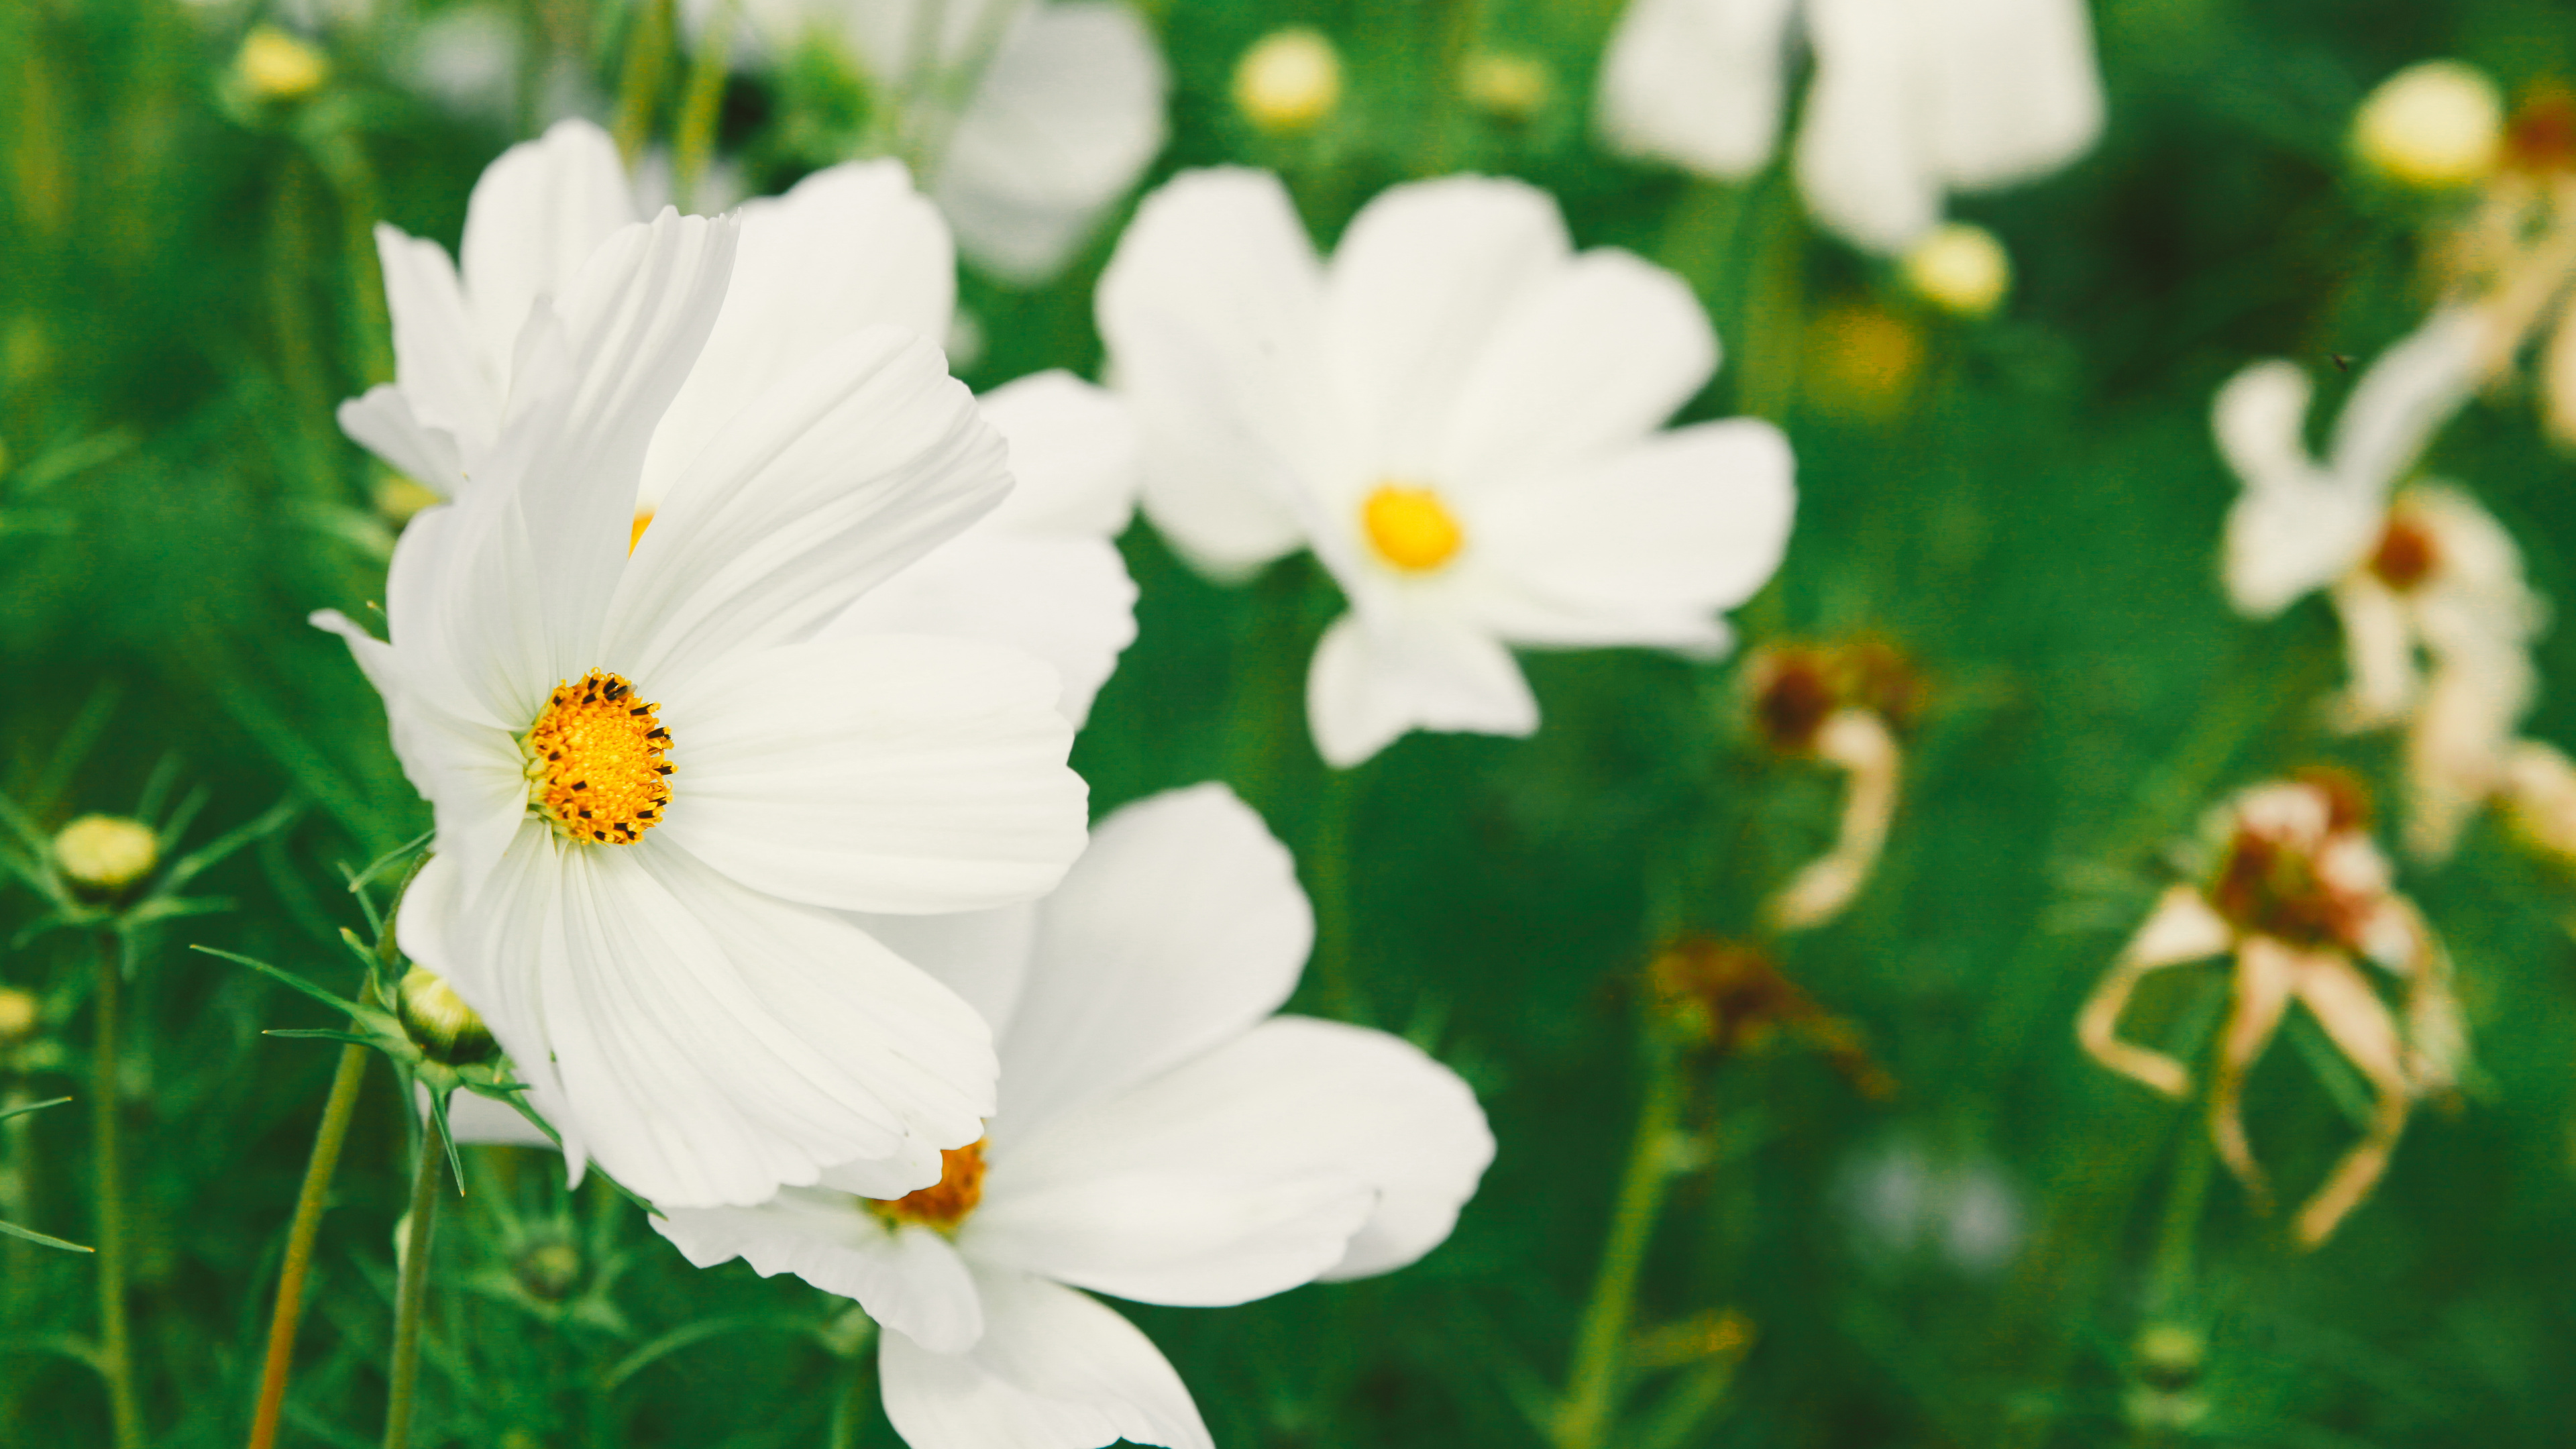 White Flowers in Tilt Shift Lens. Wallpaper in 3840x2160 Resolution